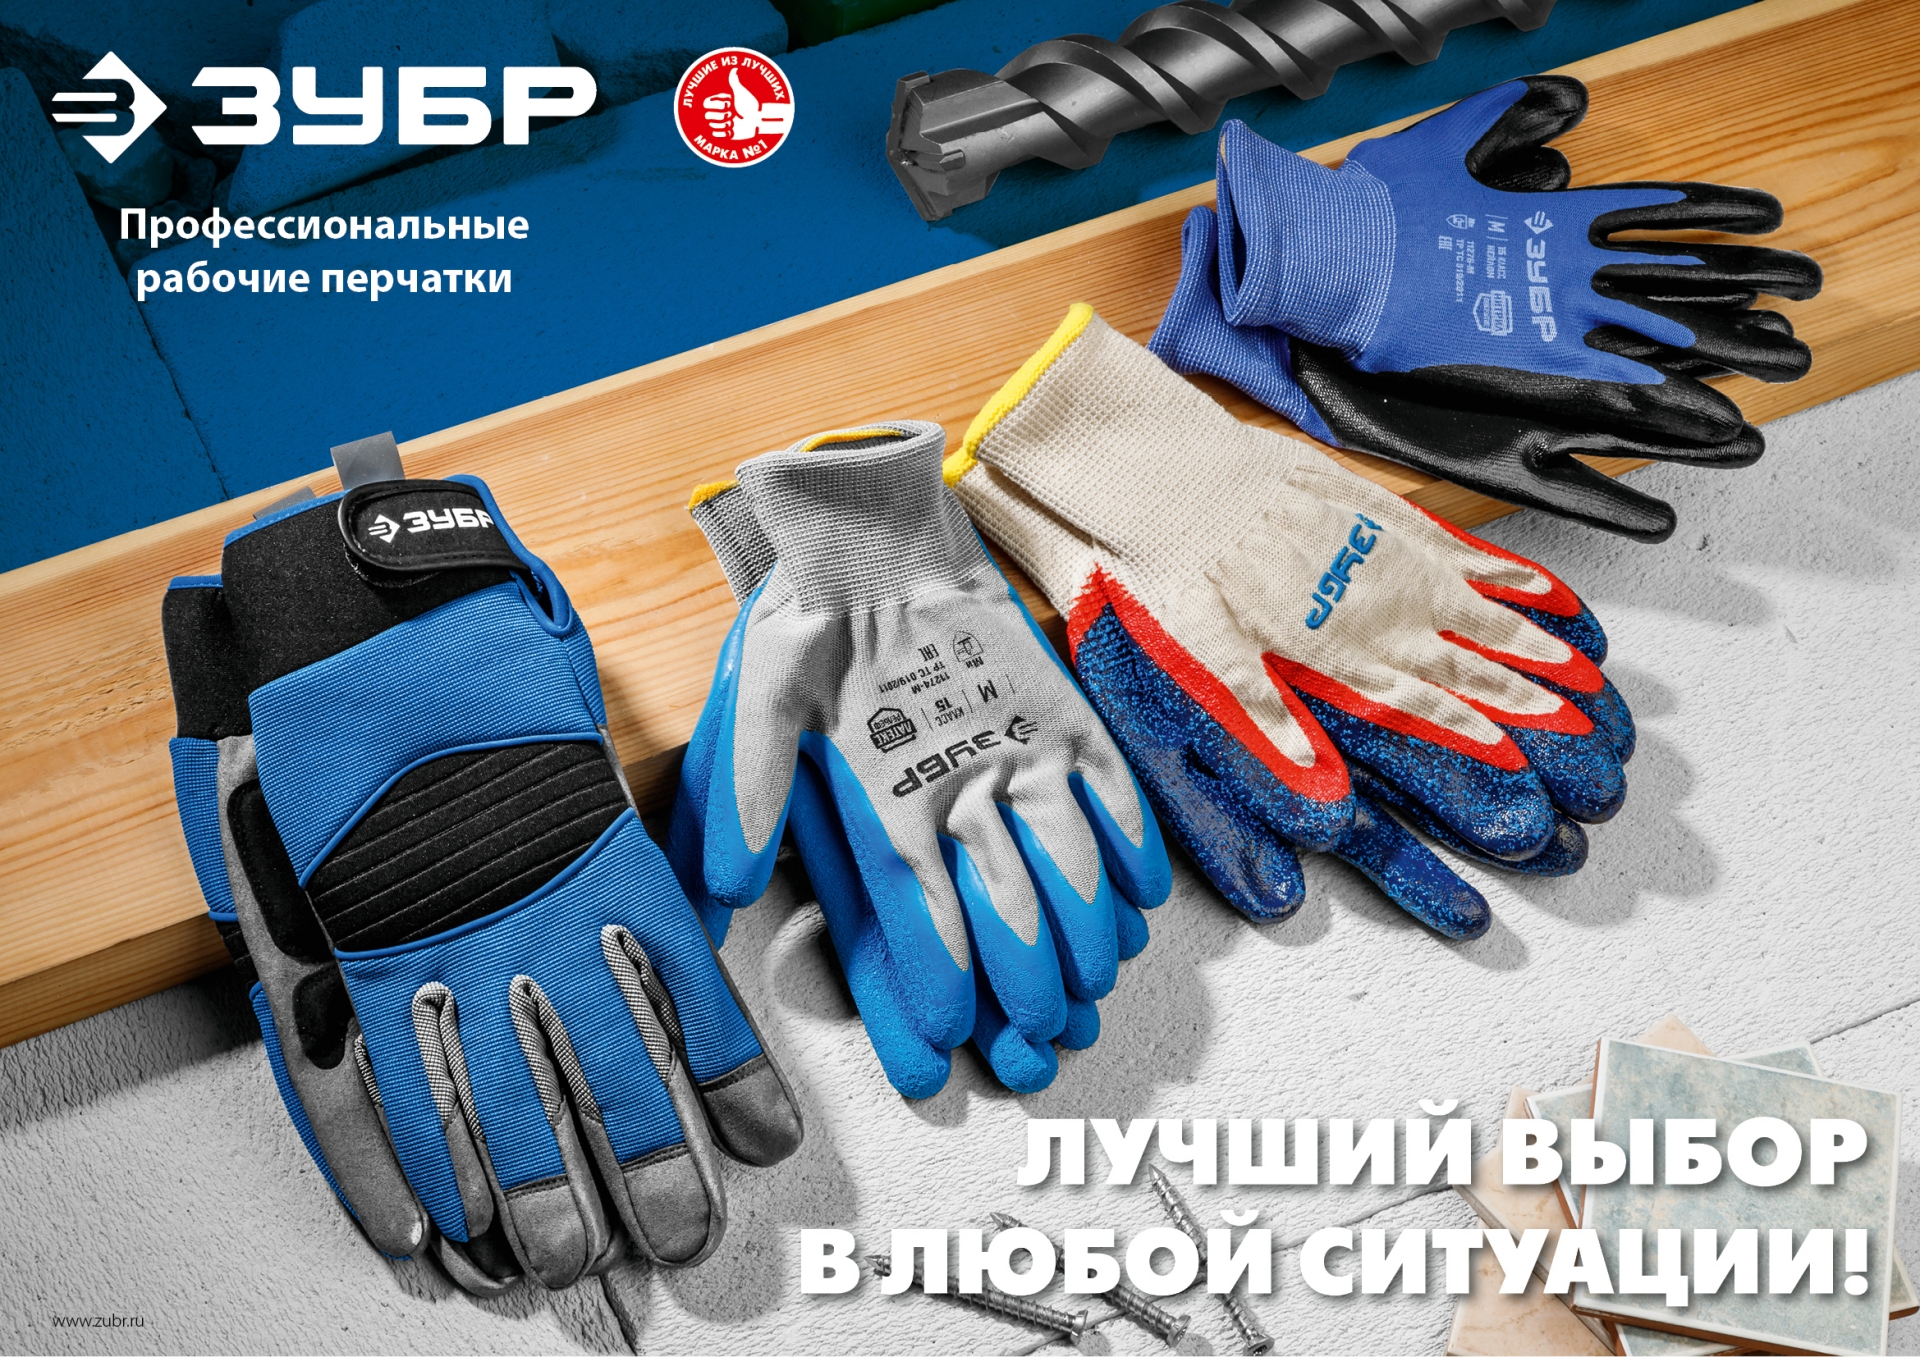 ЗУБР L-XL, мягкое противоскользящее покрытие, ПВХ-гель, перчатки для тяжелых работ (11456-XL)